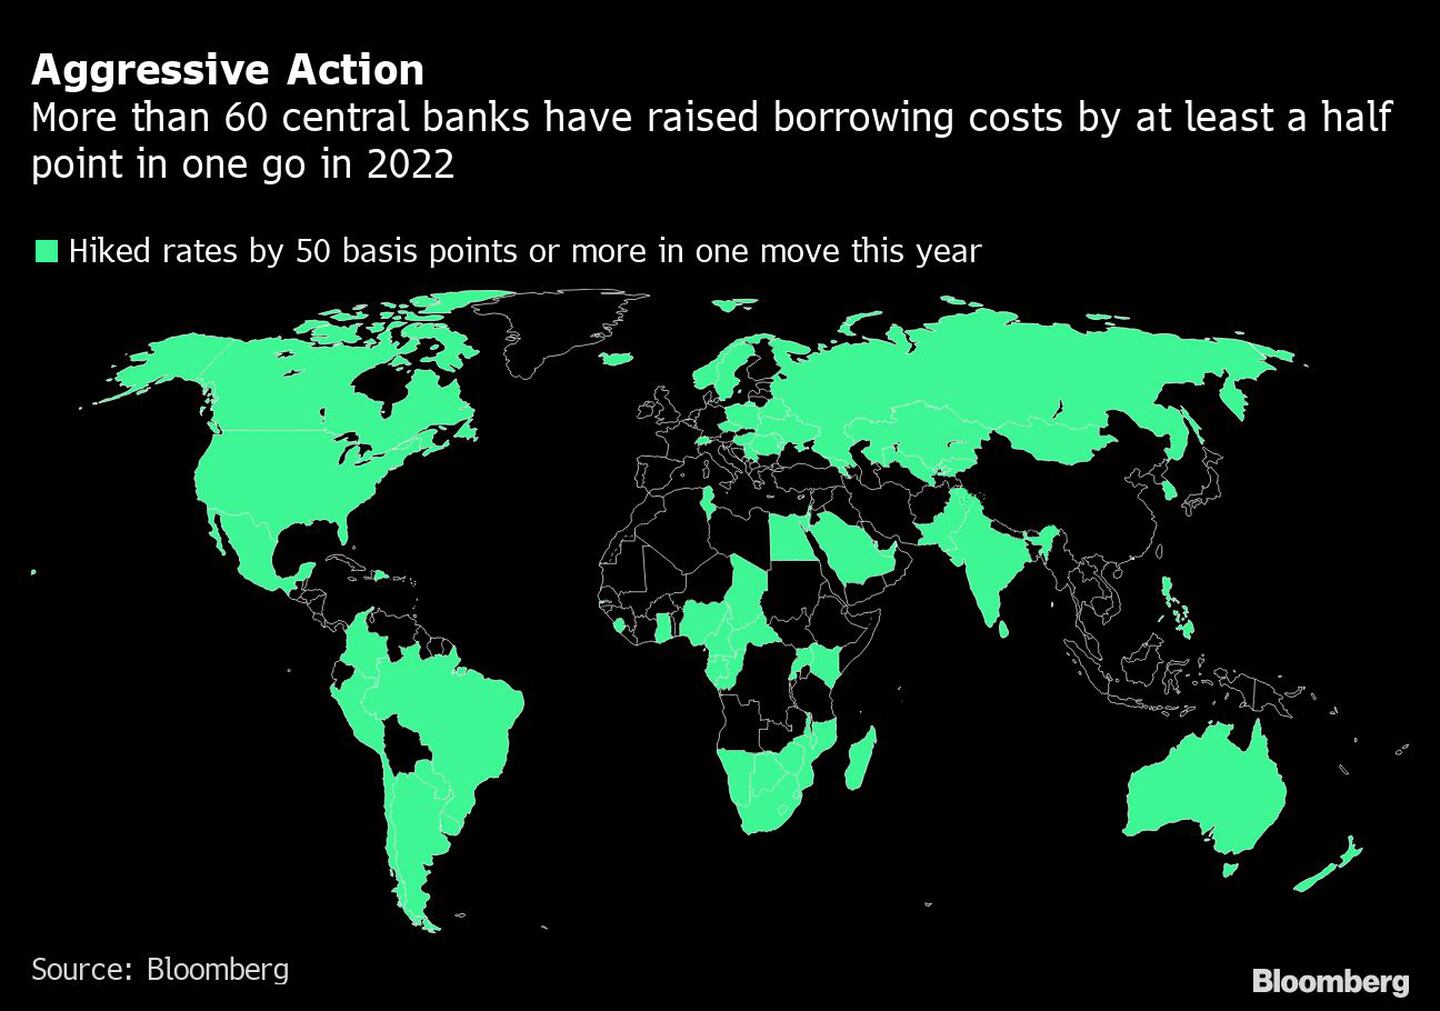 Más de 60 bancos centrales han subido los costos de endeudamiento en al menos medio punto porcentual en una reunión en 2022dfd